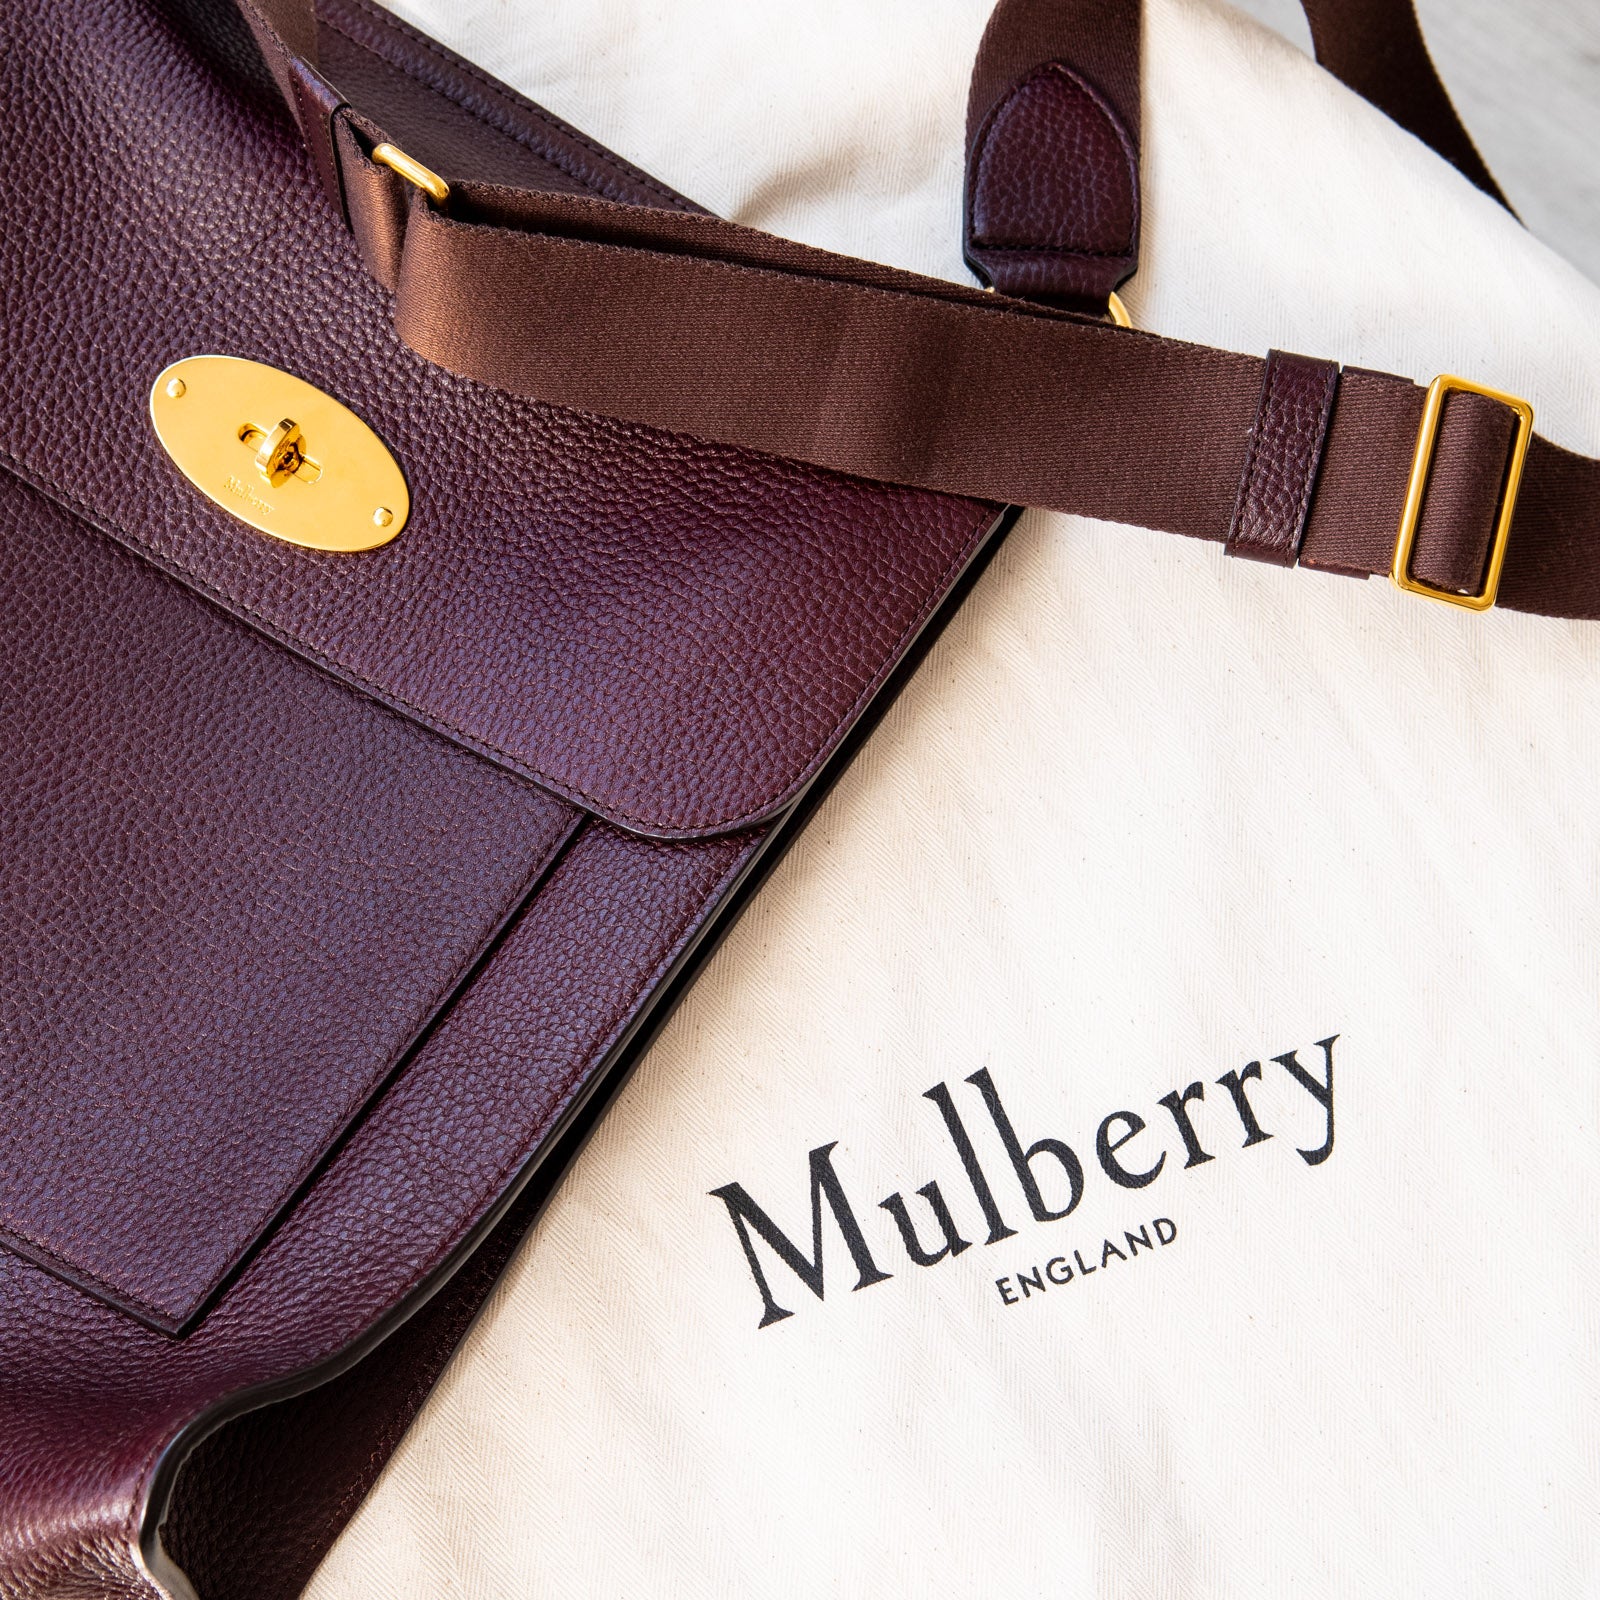 Mulberry Antony Review 